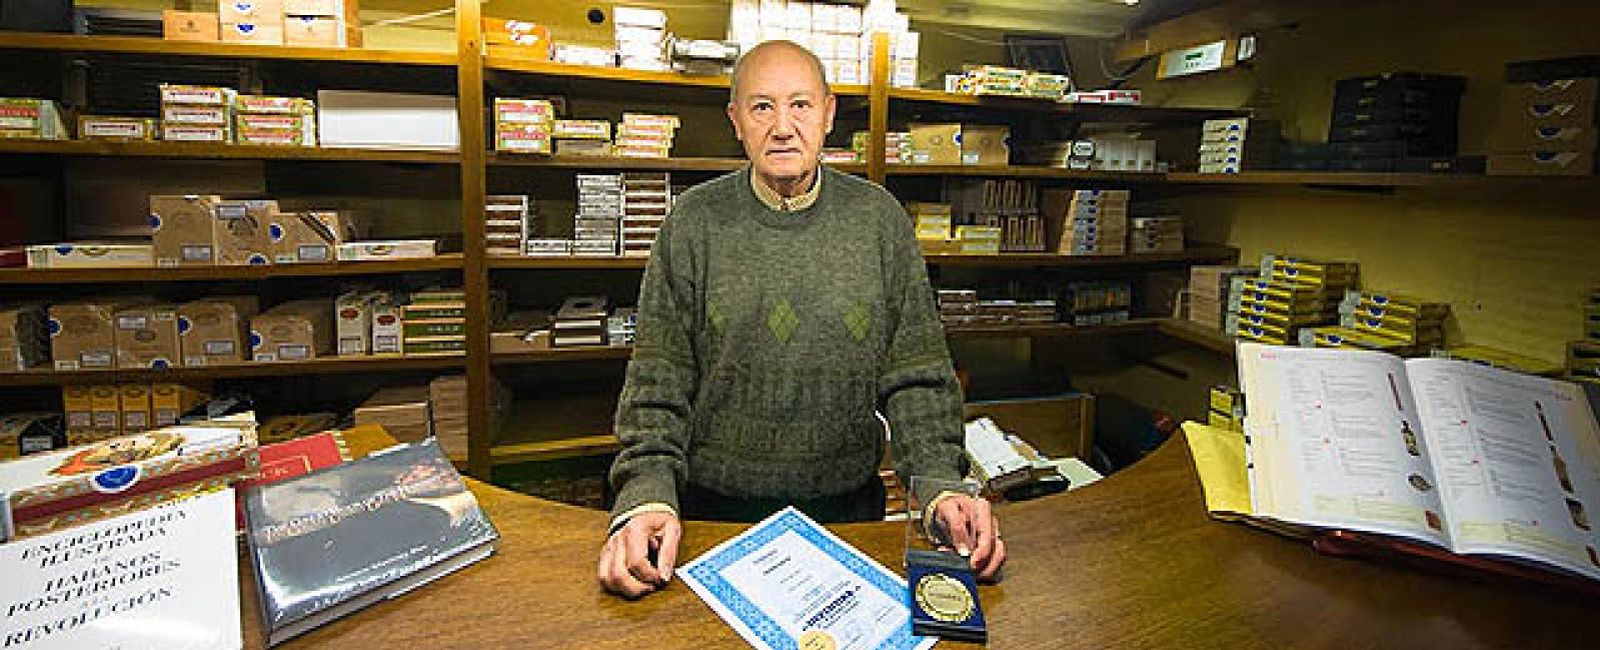 Foto: El español que inventó el filtro de los cigarros por un empleo vitalicio